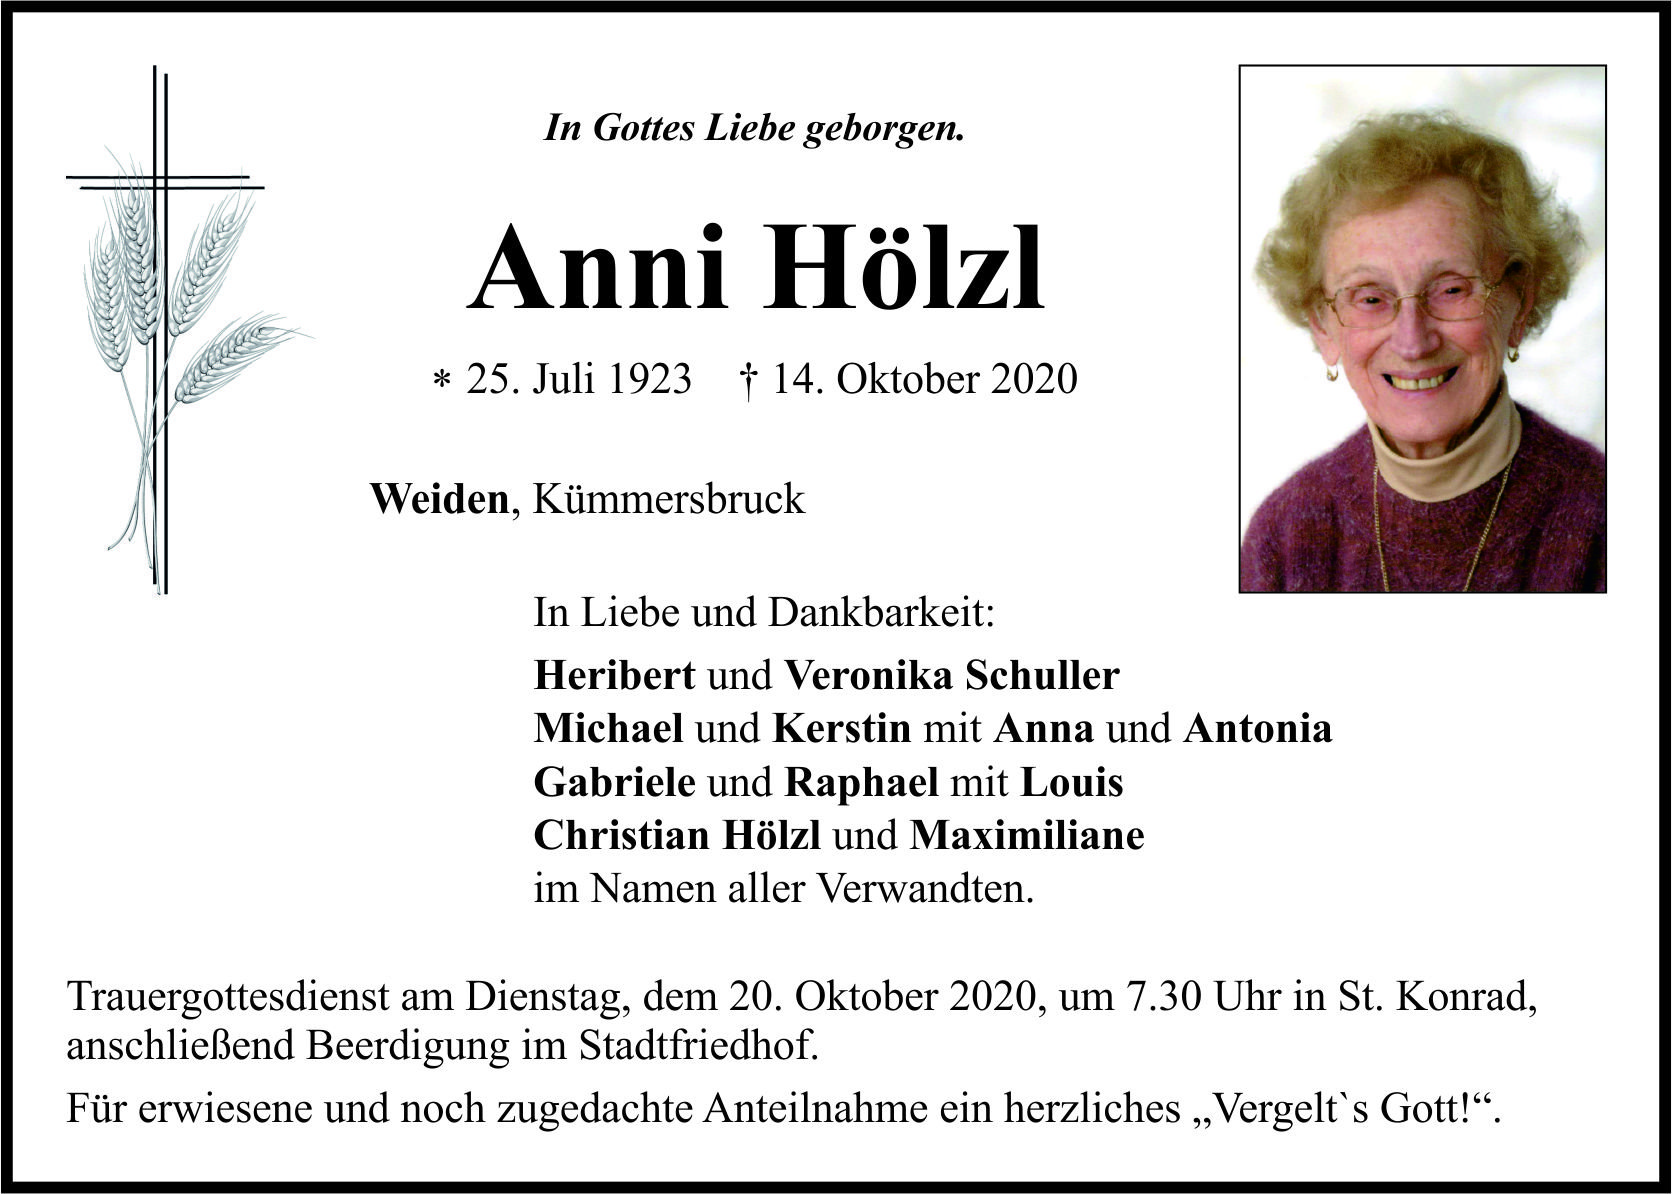 Traueranzeige Anni Hölzl, Weiden